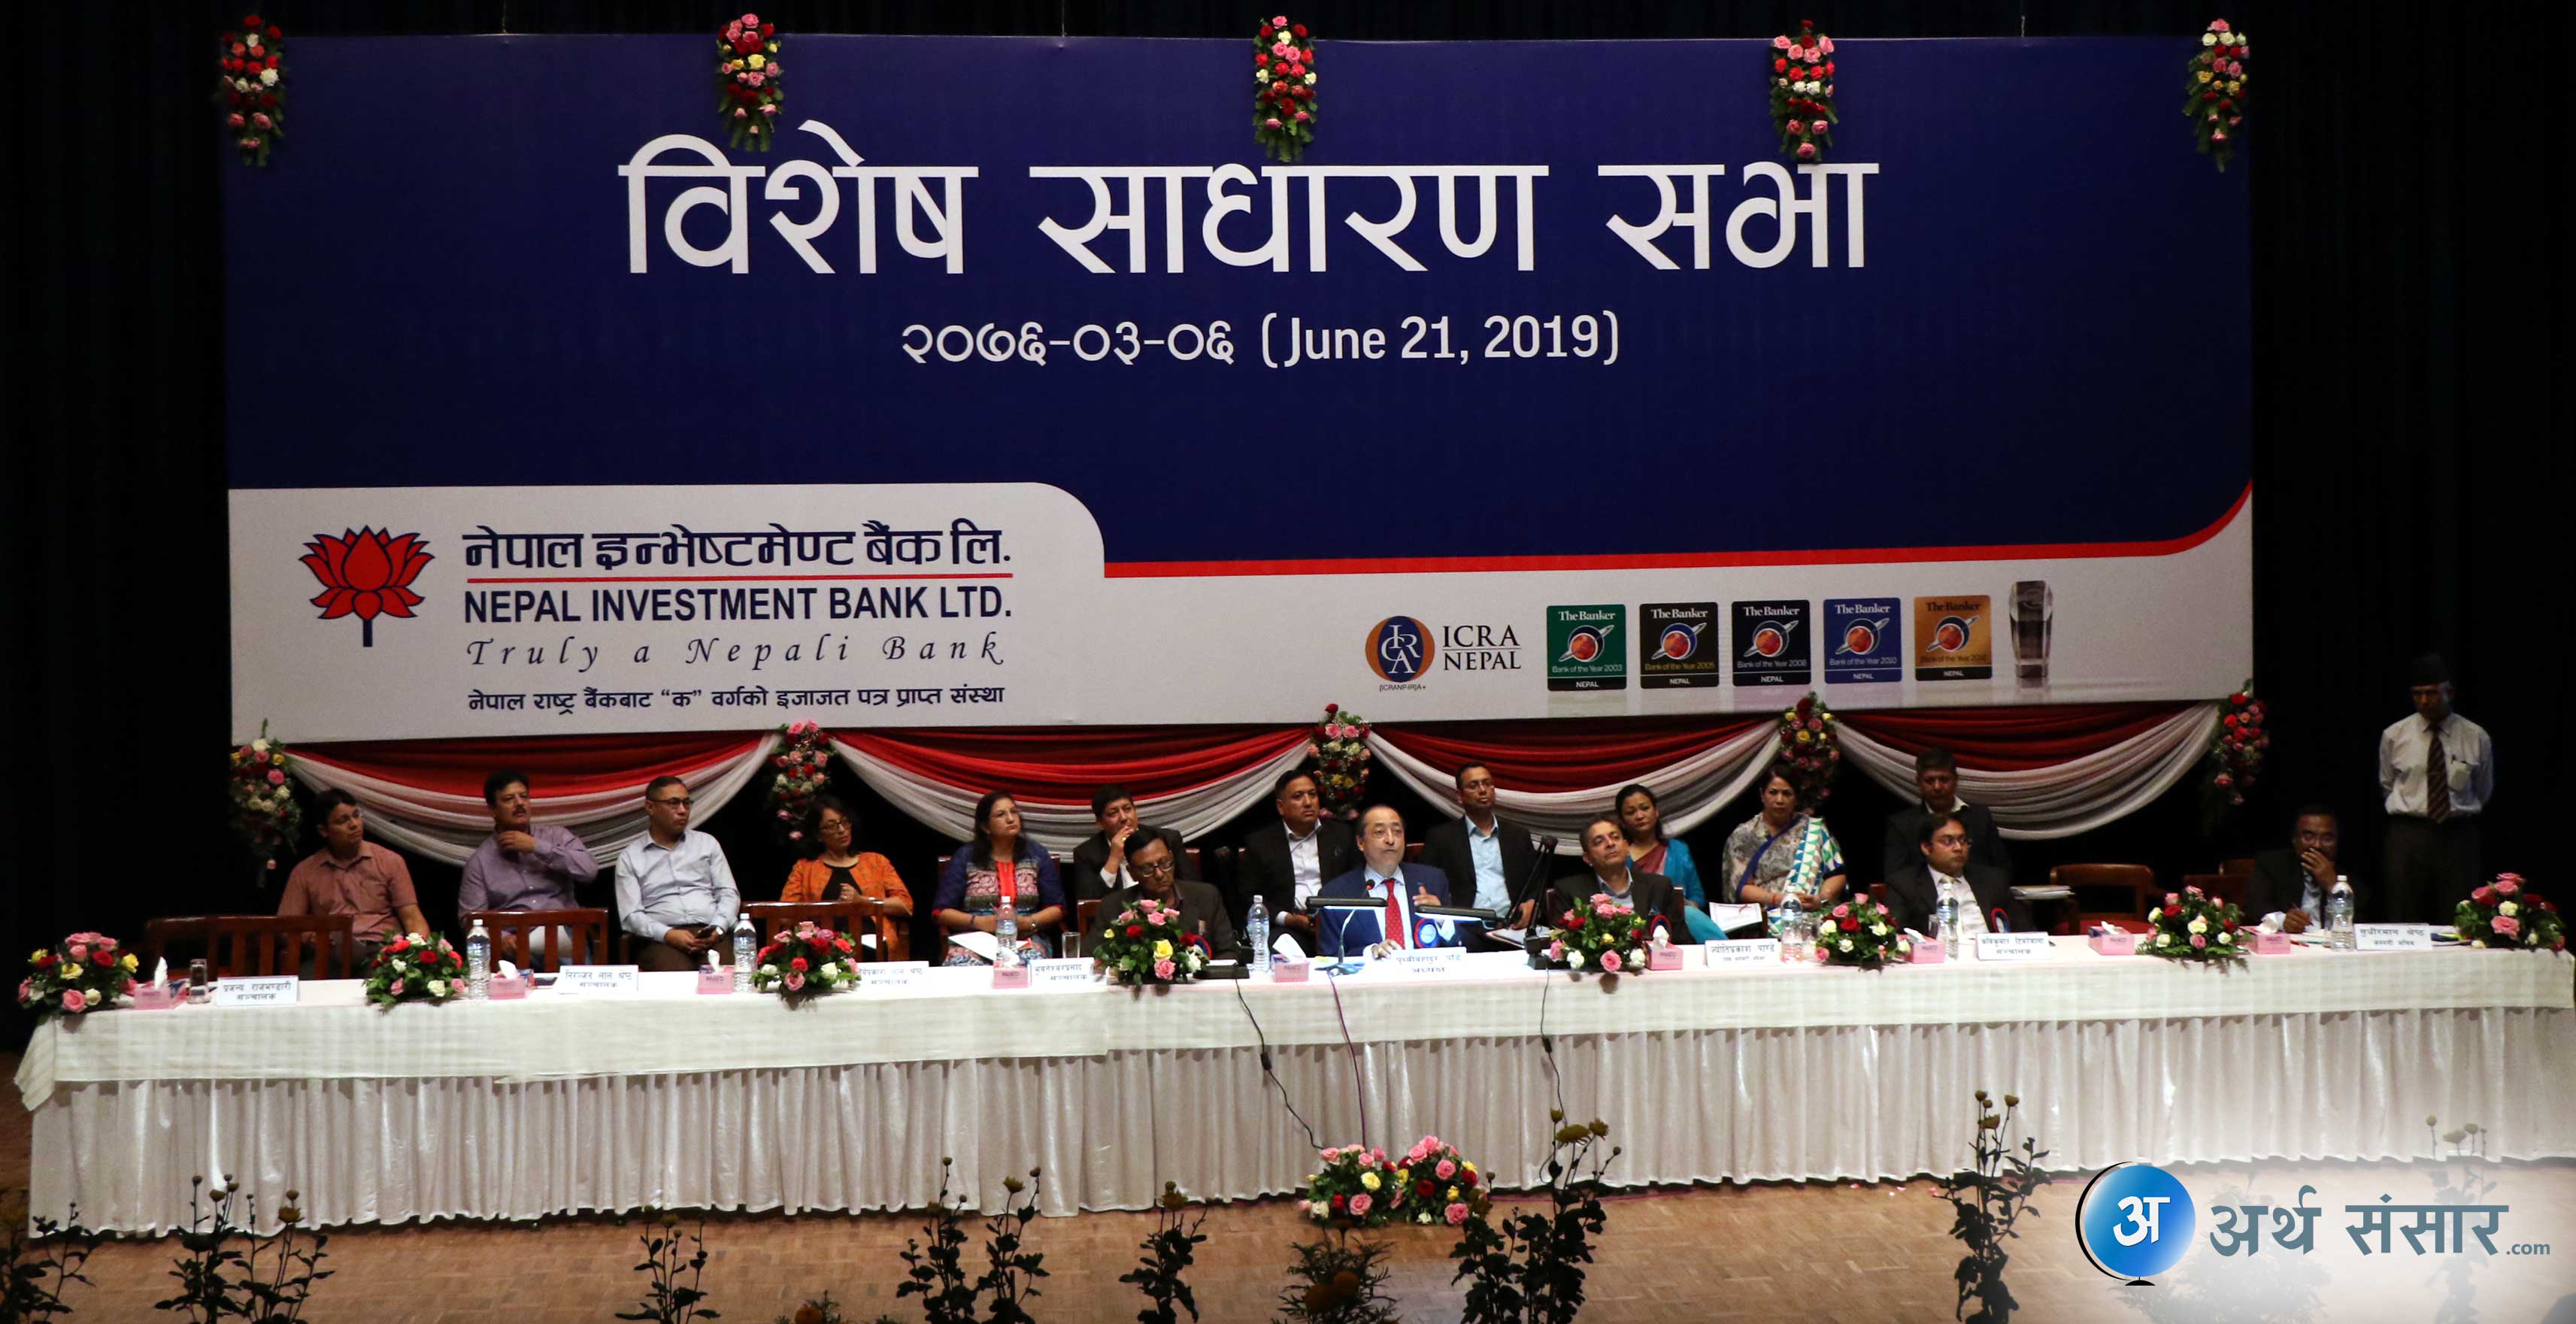 नेपाल इन्भेष्टमेण्ट बैंकले जेबिल्स फाइनान्सलाई गाभ्यो,  चुक्ता  पूँजी १२ अर्ब ८७ करोड पुग्यो (भिडियोसहित)